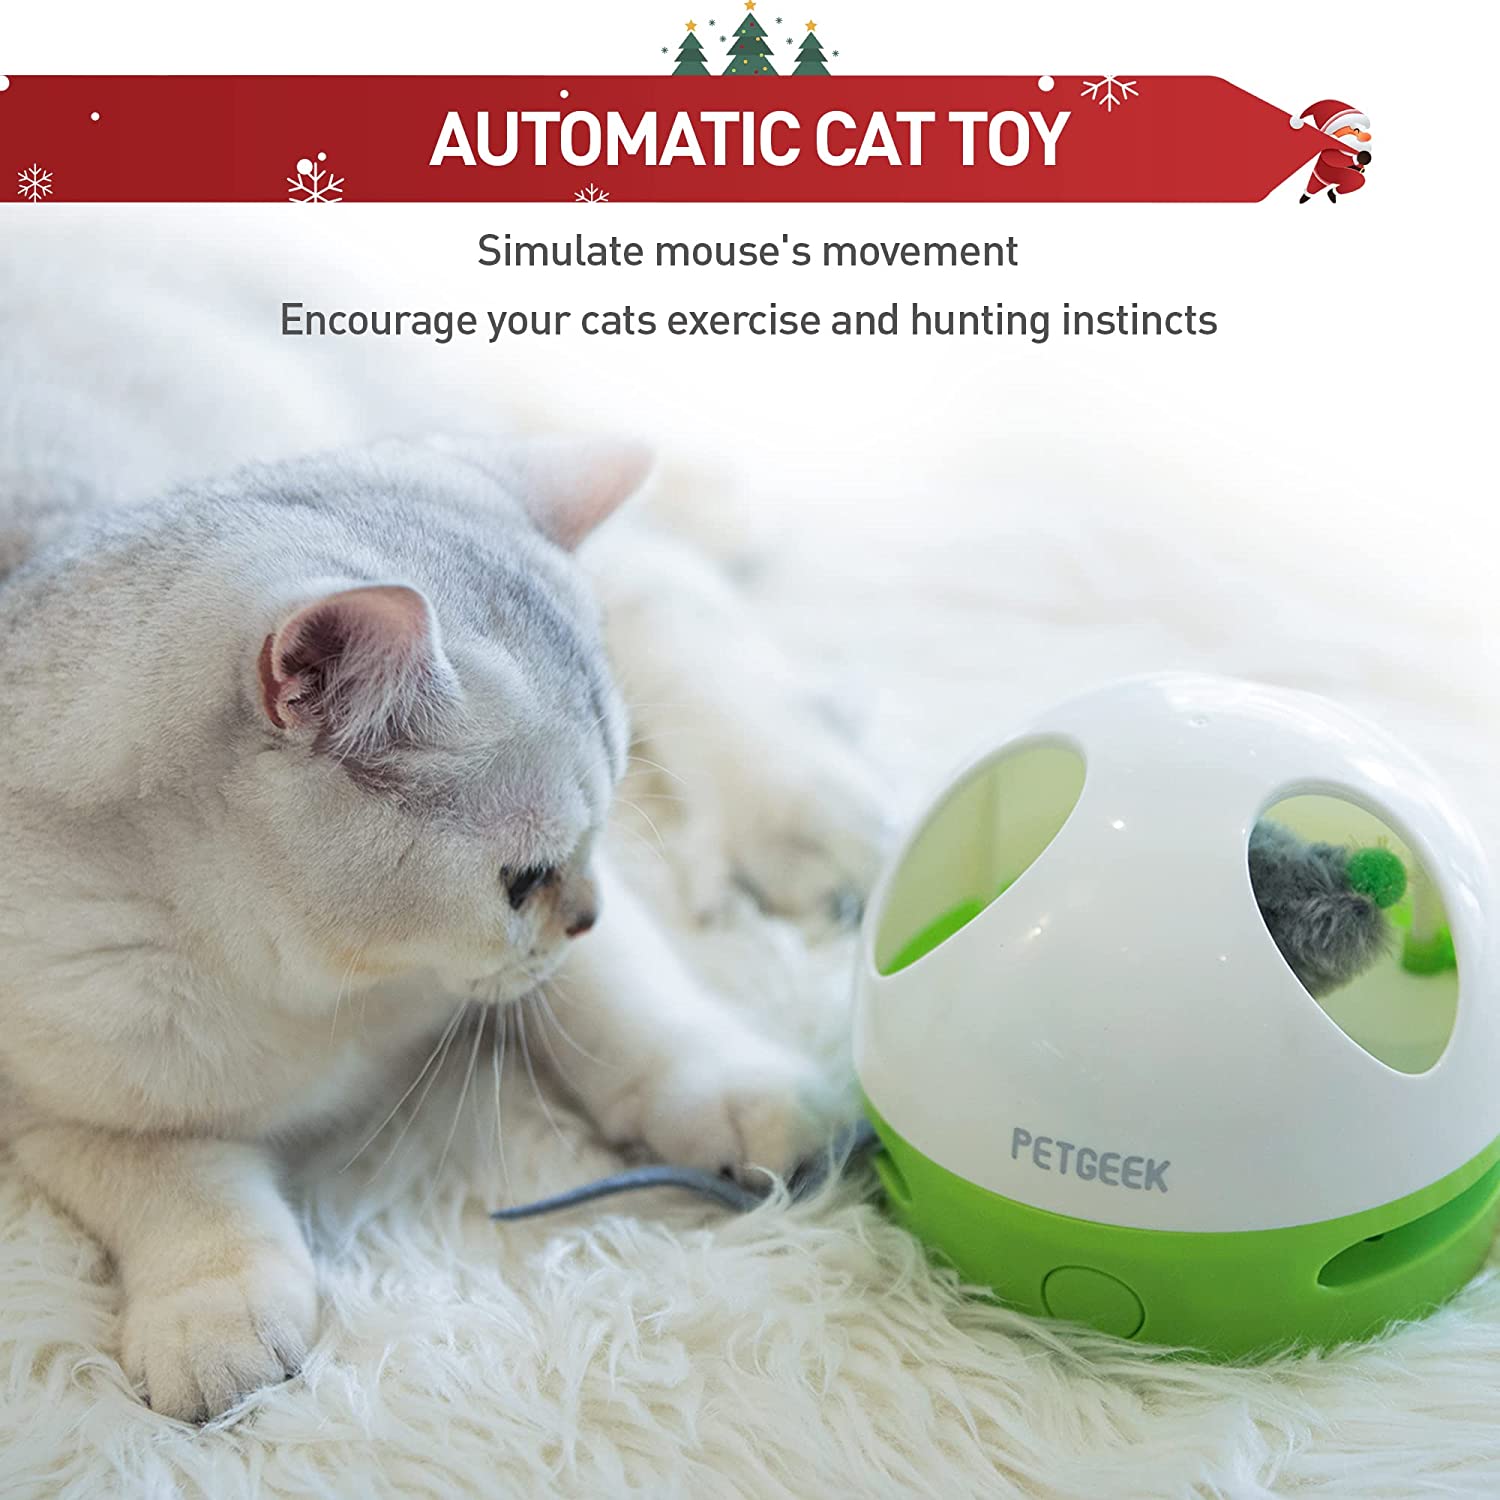  اسباب بازی موش گربه الکترونیکی هر دو صدای محرک موش را با پُر از قلاب گربه ای ترکیب می کند، دو تیزر مختلف شادی مضاعف را برای گربه های شما به ارمغان می آورد